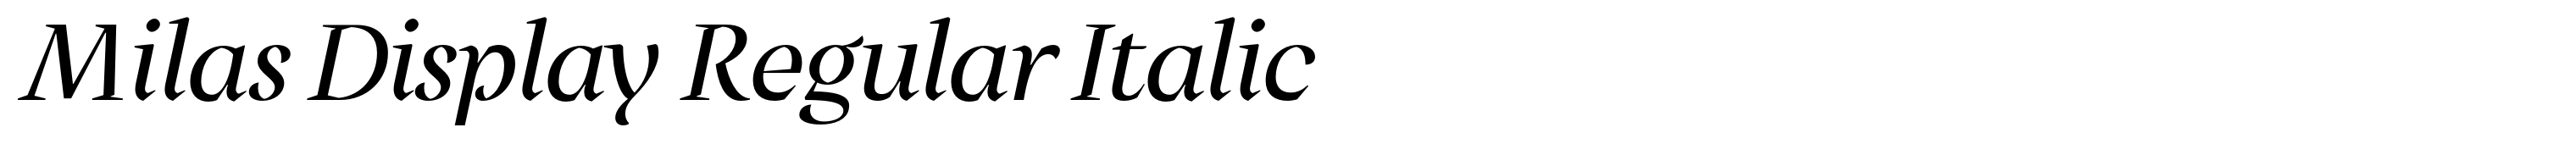 Milas Display Regular Italic